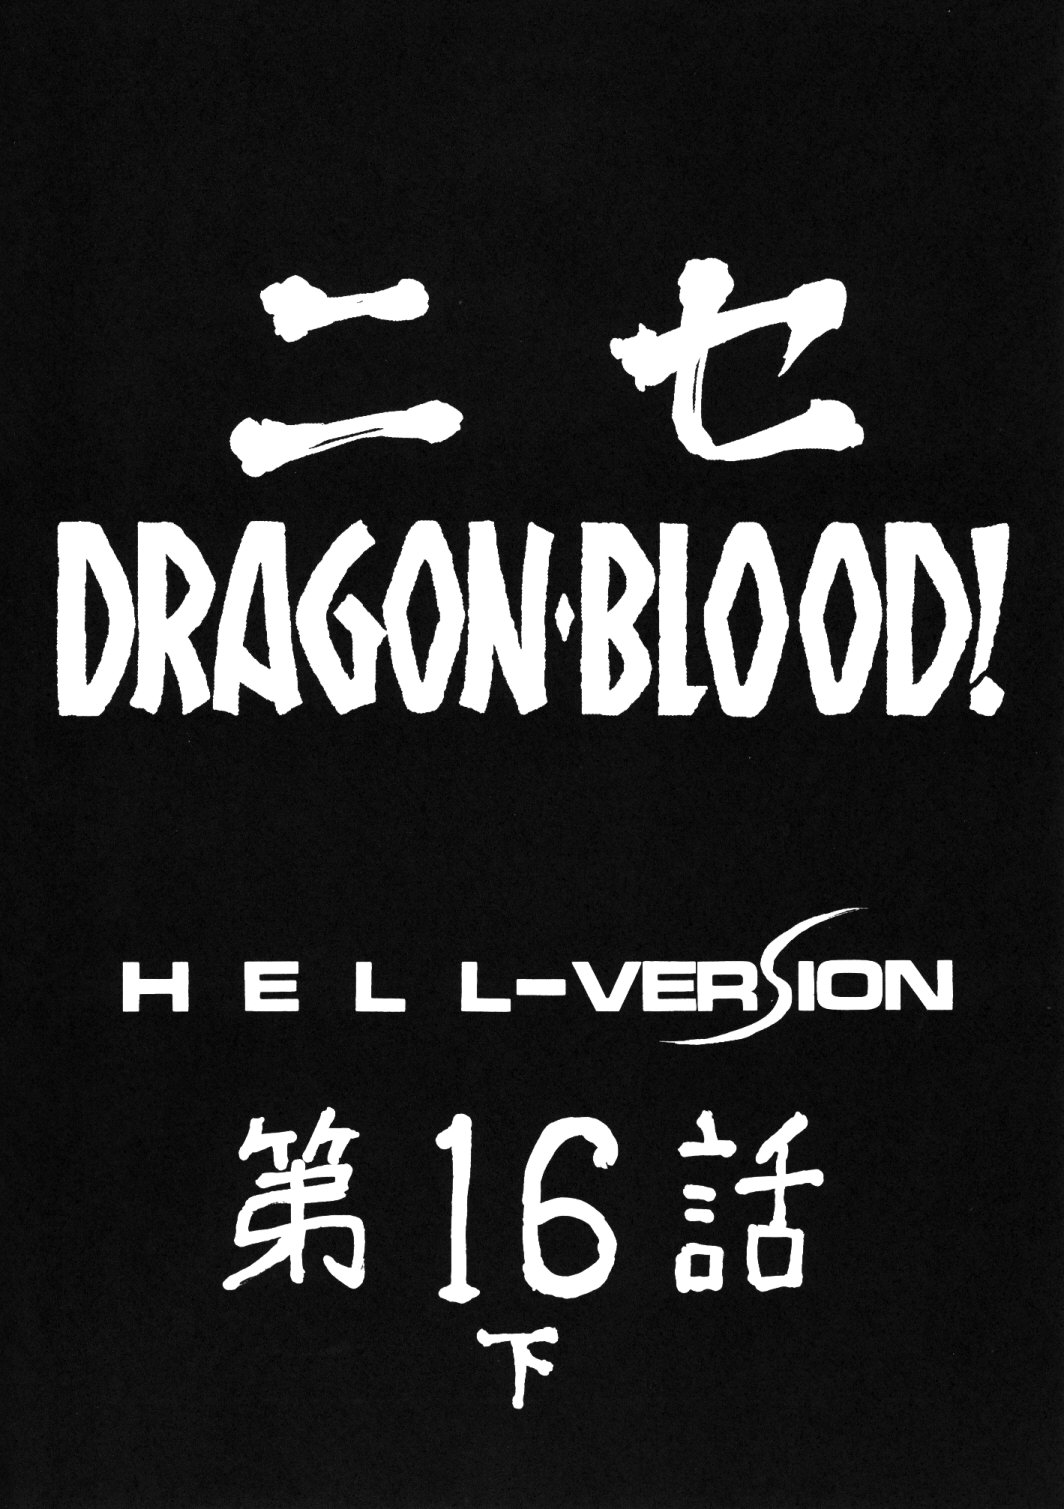 (COMIC1☆3) [LTM. (たいらはじめ)] ニセ DRAGON・BLOOD！16 1/2